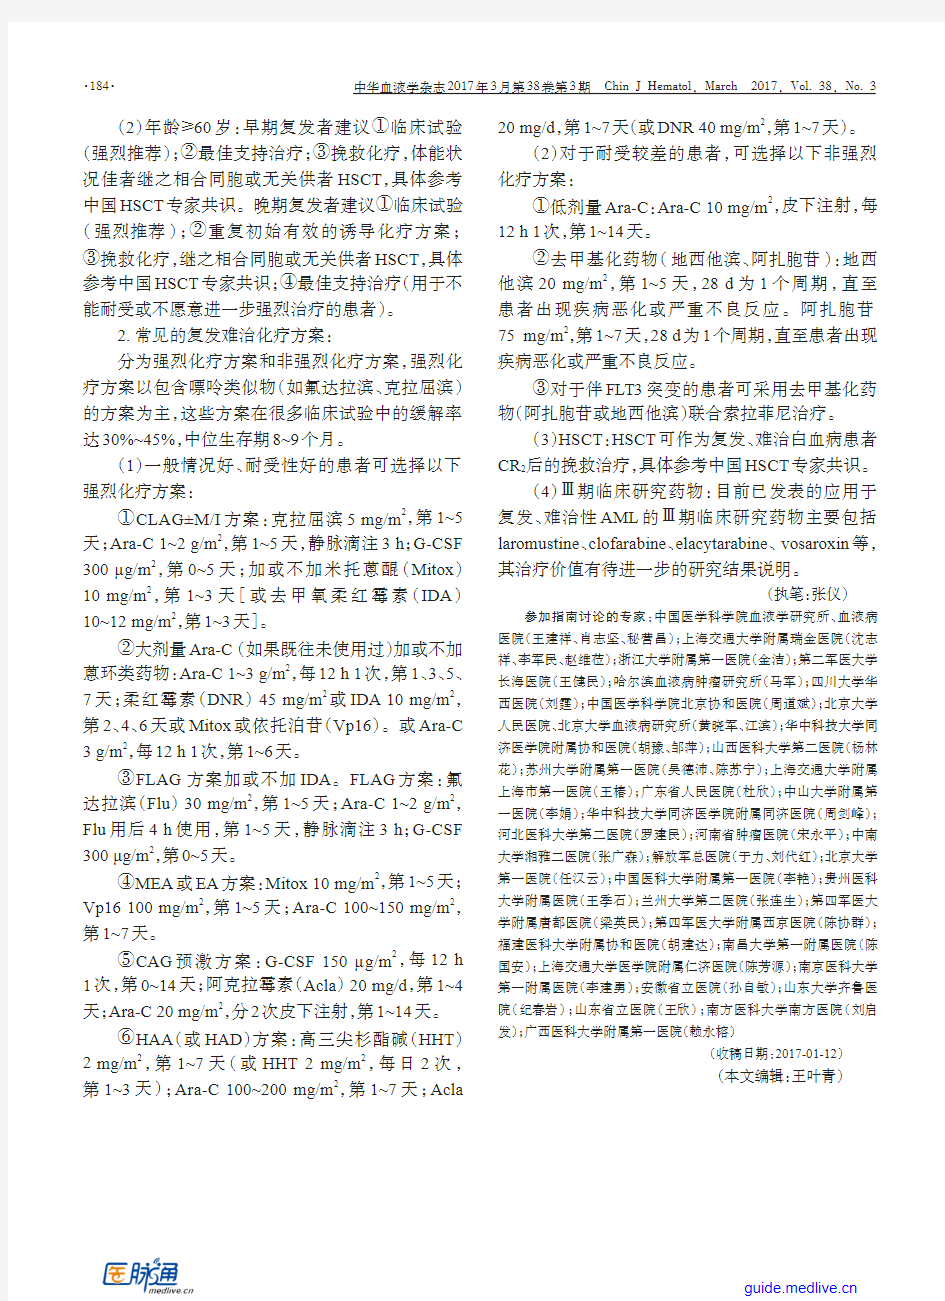 复发难治性急性髓系白血病中国诊疗指南(2017年版)